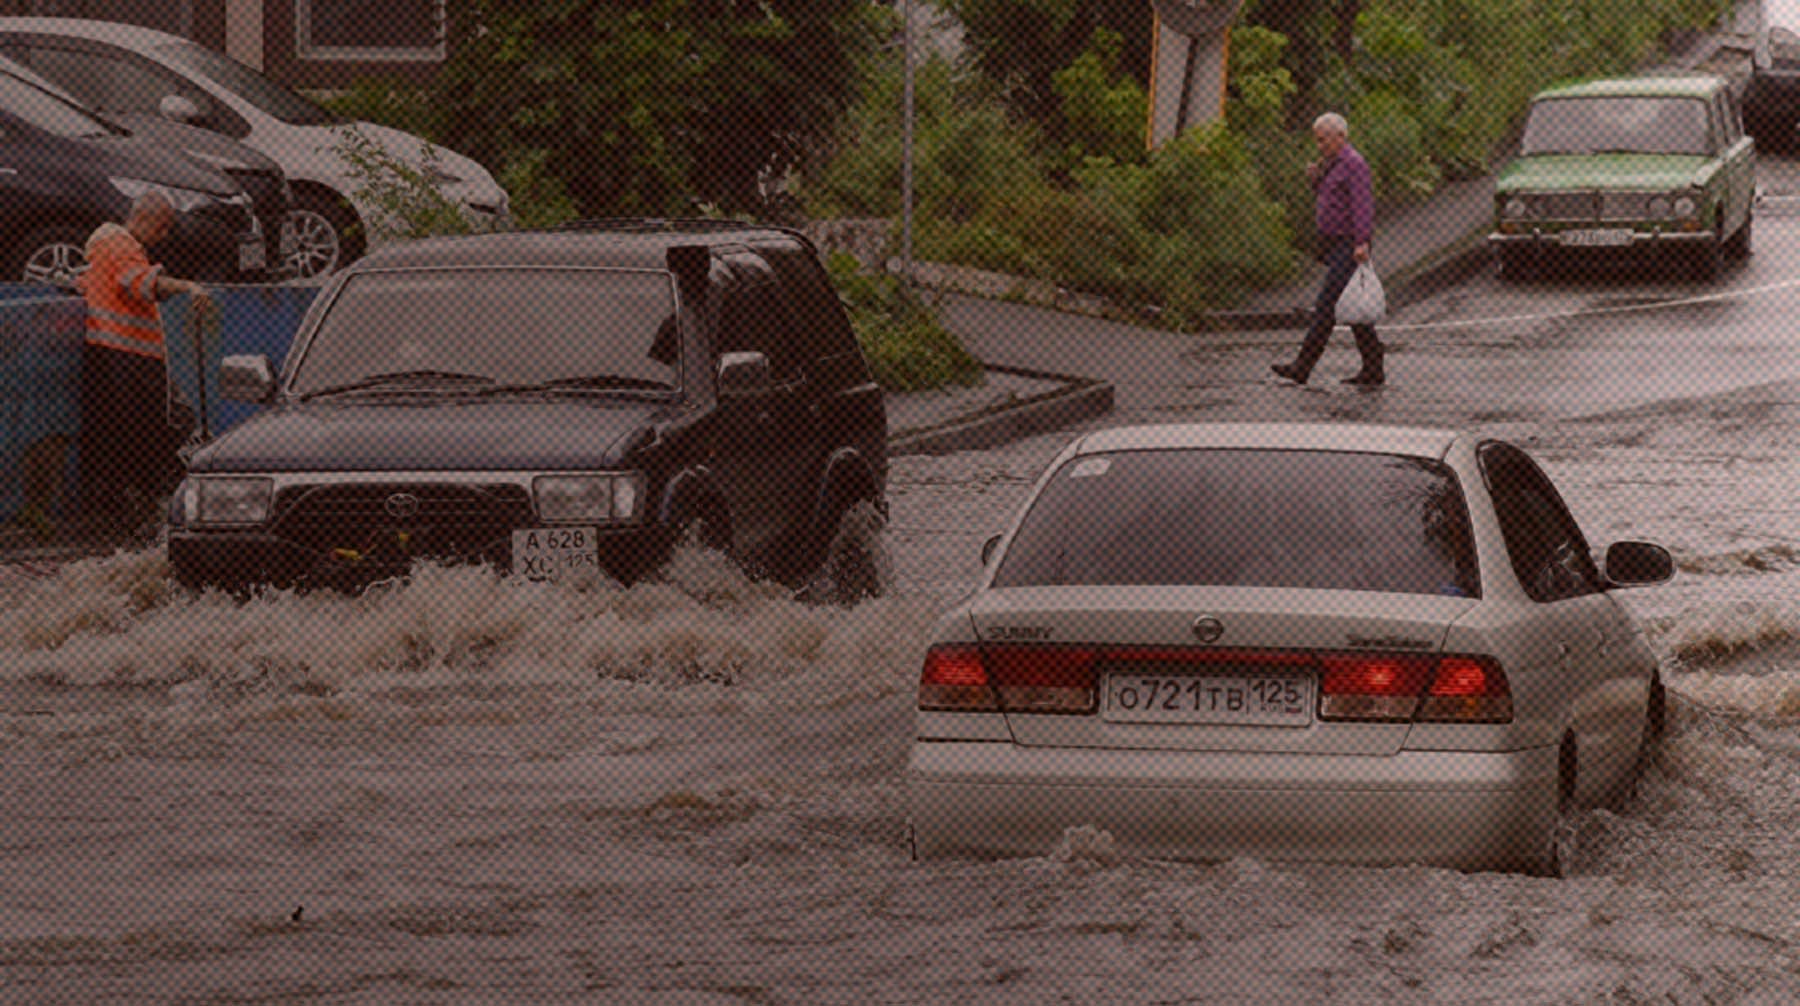 В соцсетях публикуют кадры непогоды в столице Приморья Автомобили едут по одной из улиц Владивостока, затопленных в результате сильного ливня